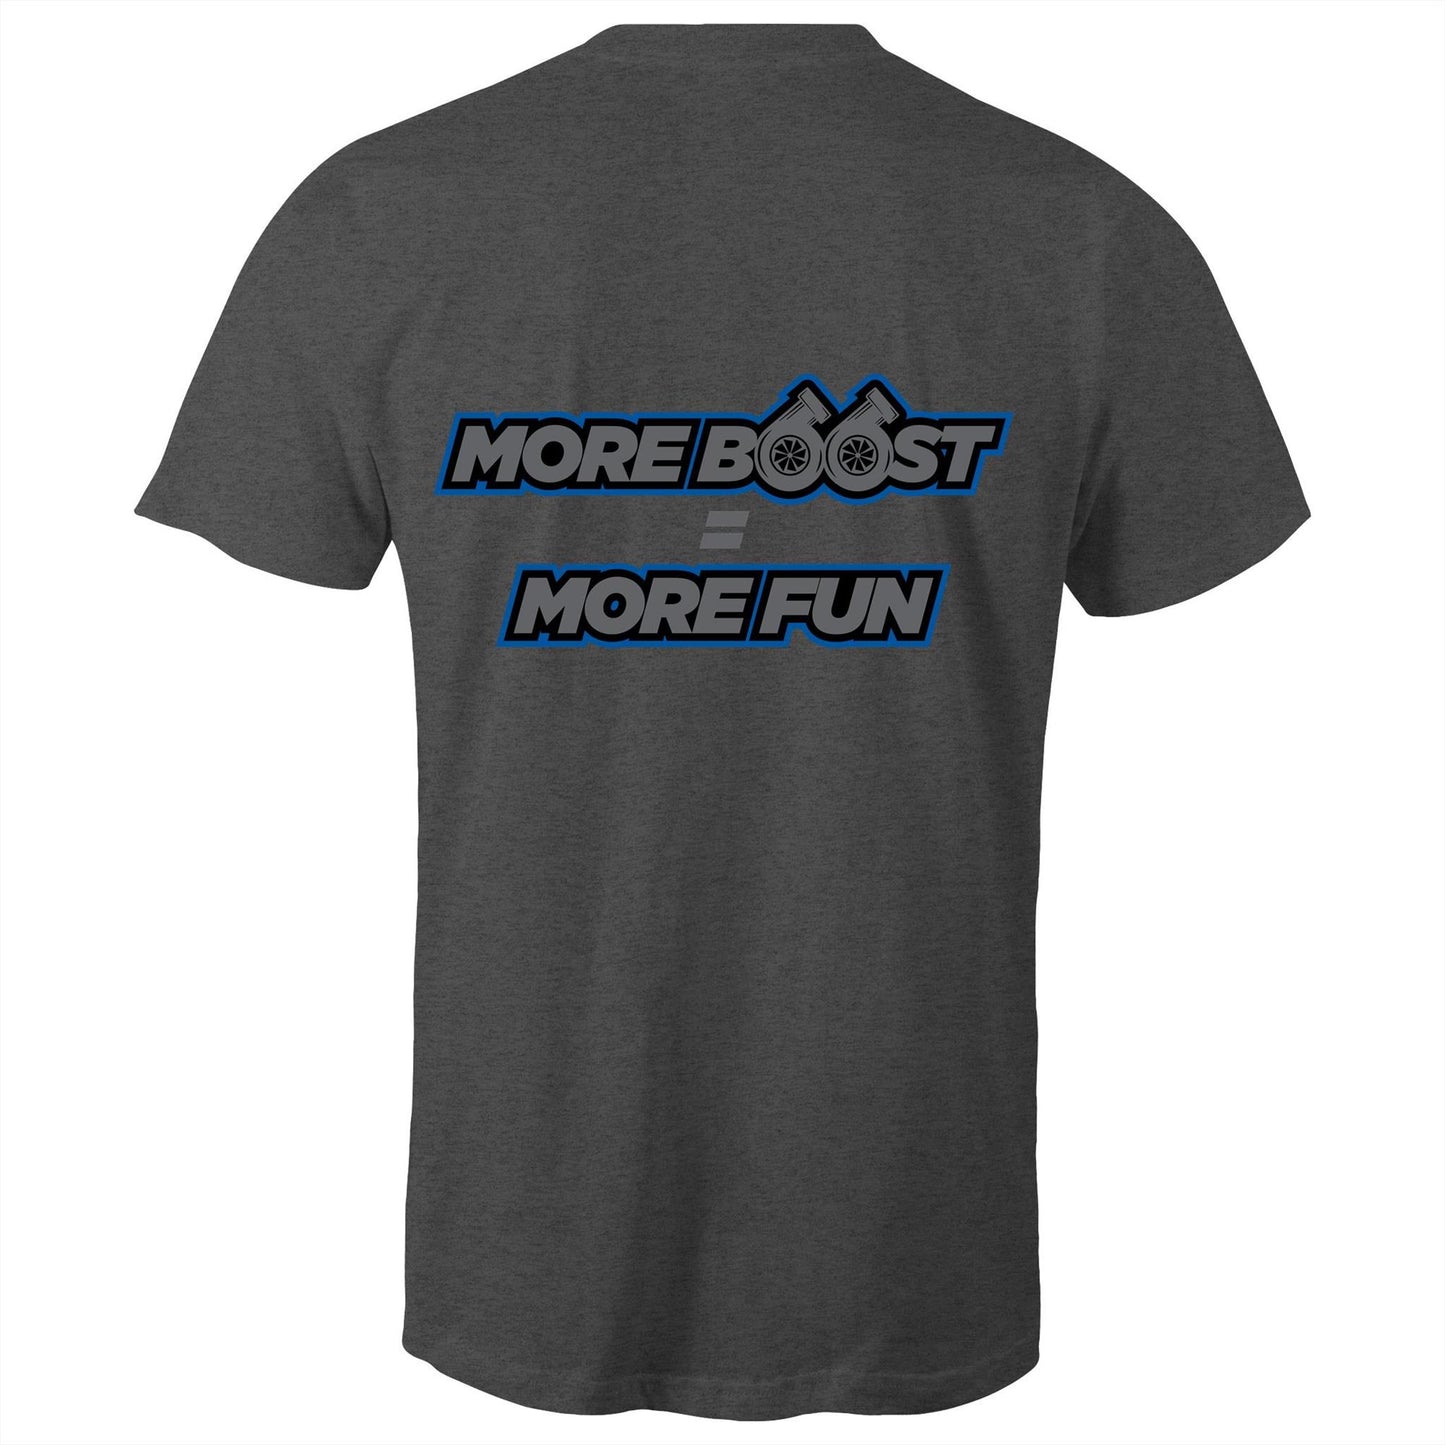 HoonTV - More BOOST = More Fun - Mens T-Shirt